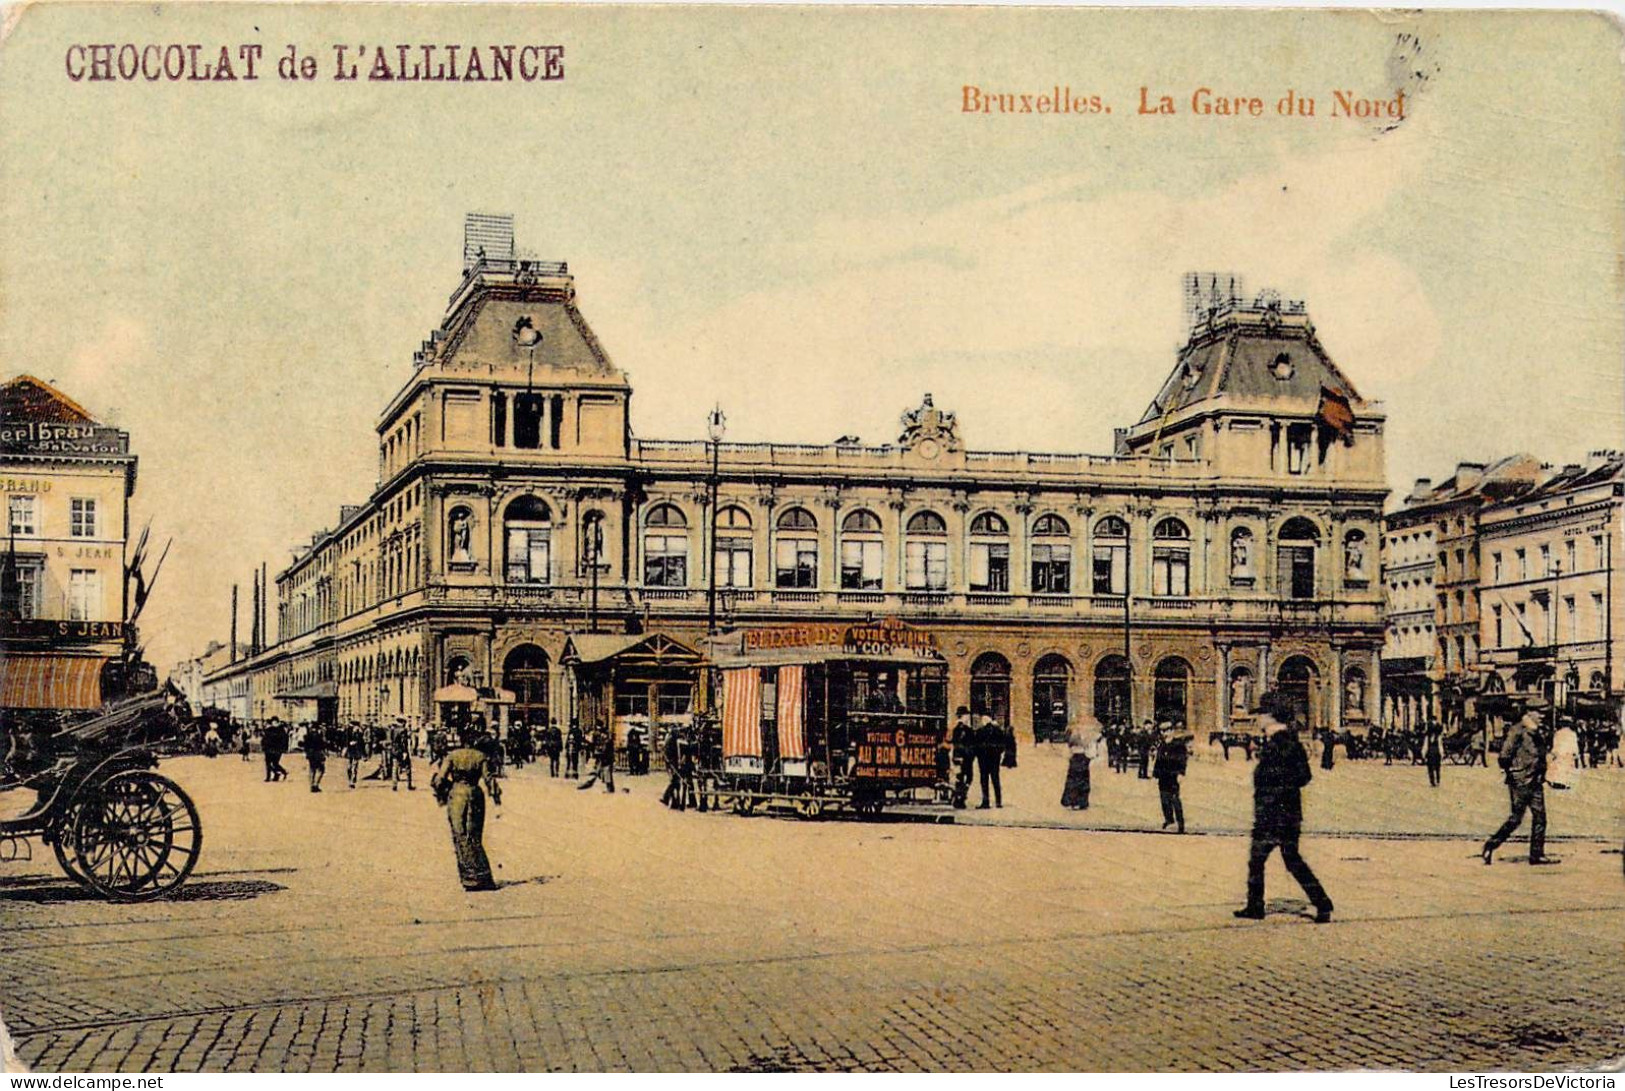 BELGIQUE - Bruxelles -  La Gare Du Nord - Chocolat De L'Alliance - Carte Postale Ancienne - Schienenverkehr - Bahnhöfe